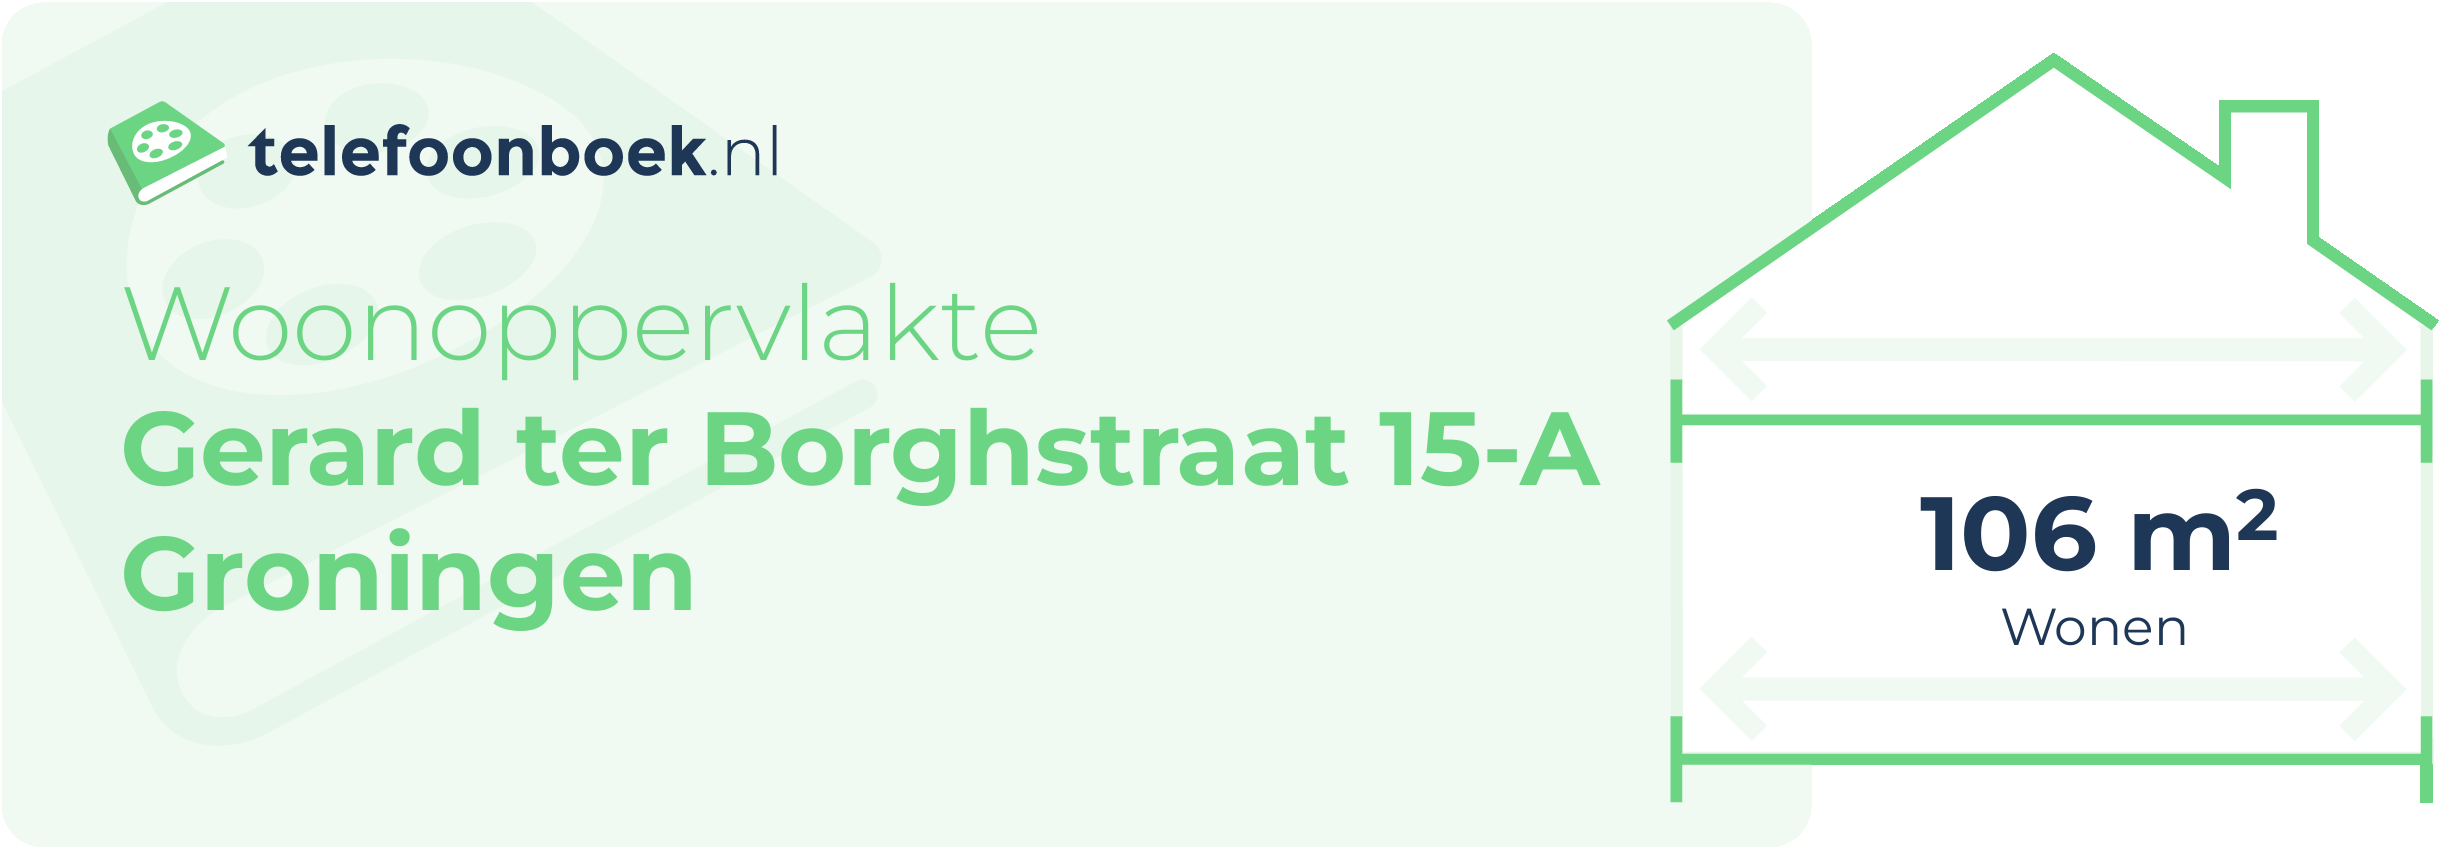 Woonoppervlakte Gerard Ter Borghstraat 15-A Groningen